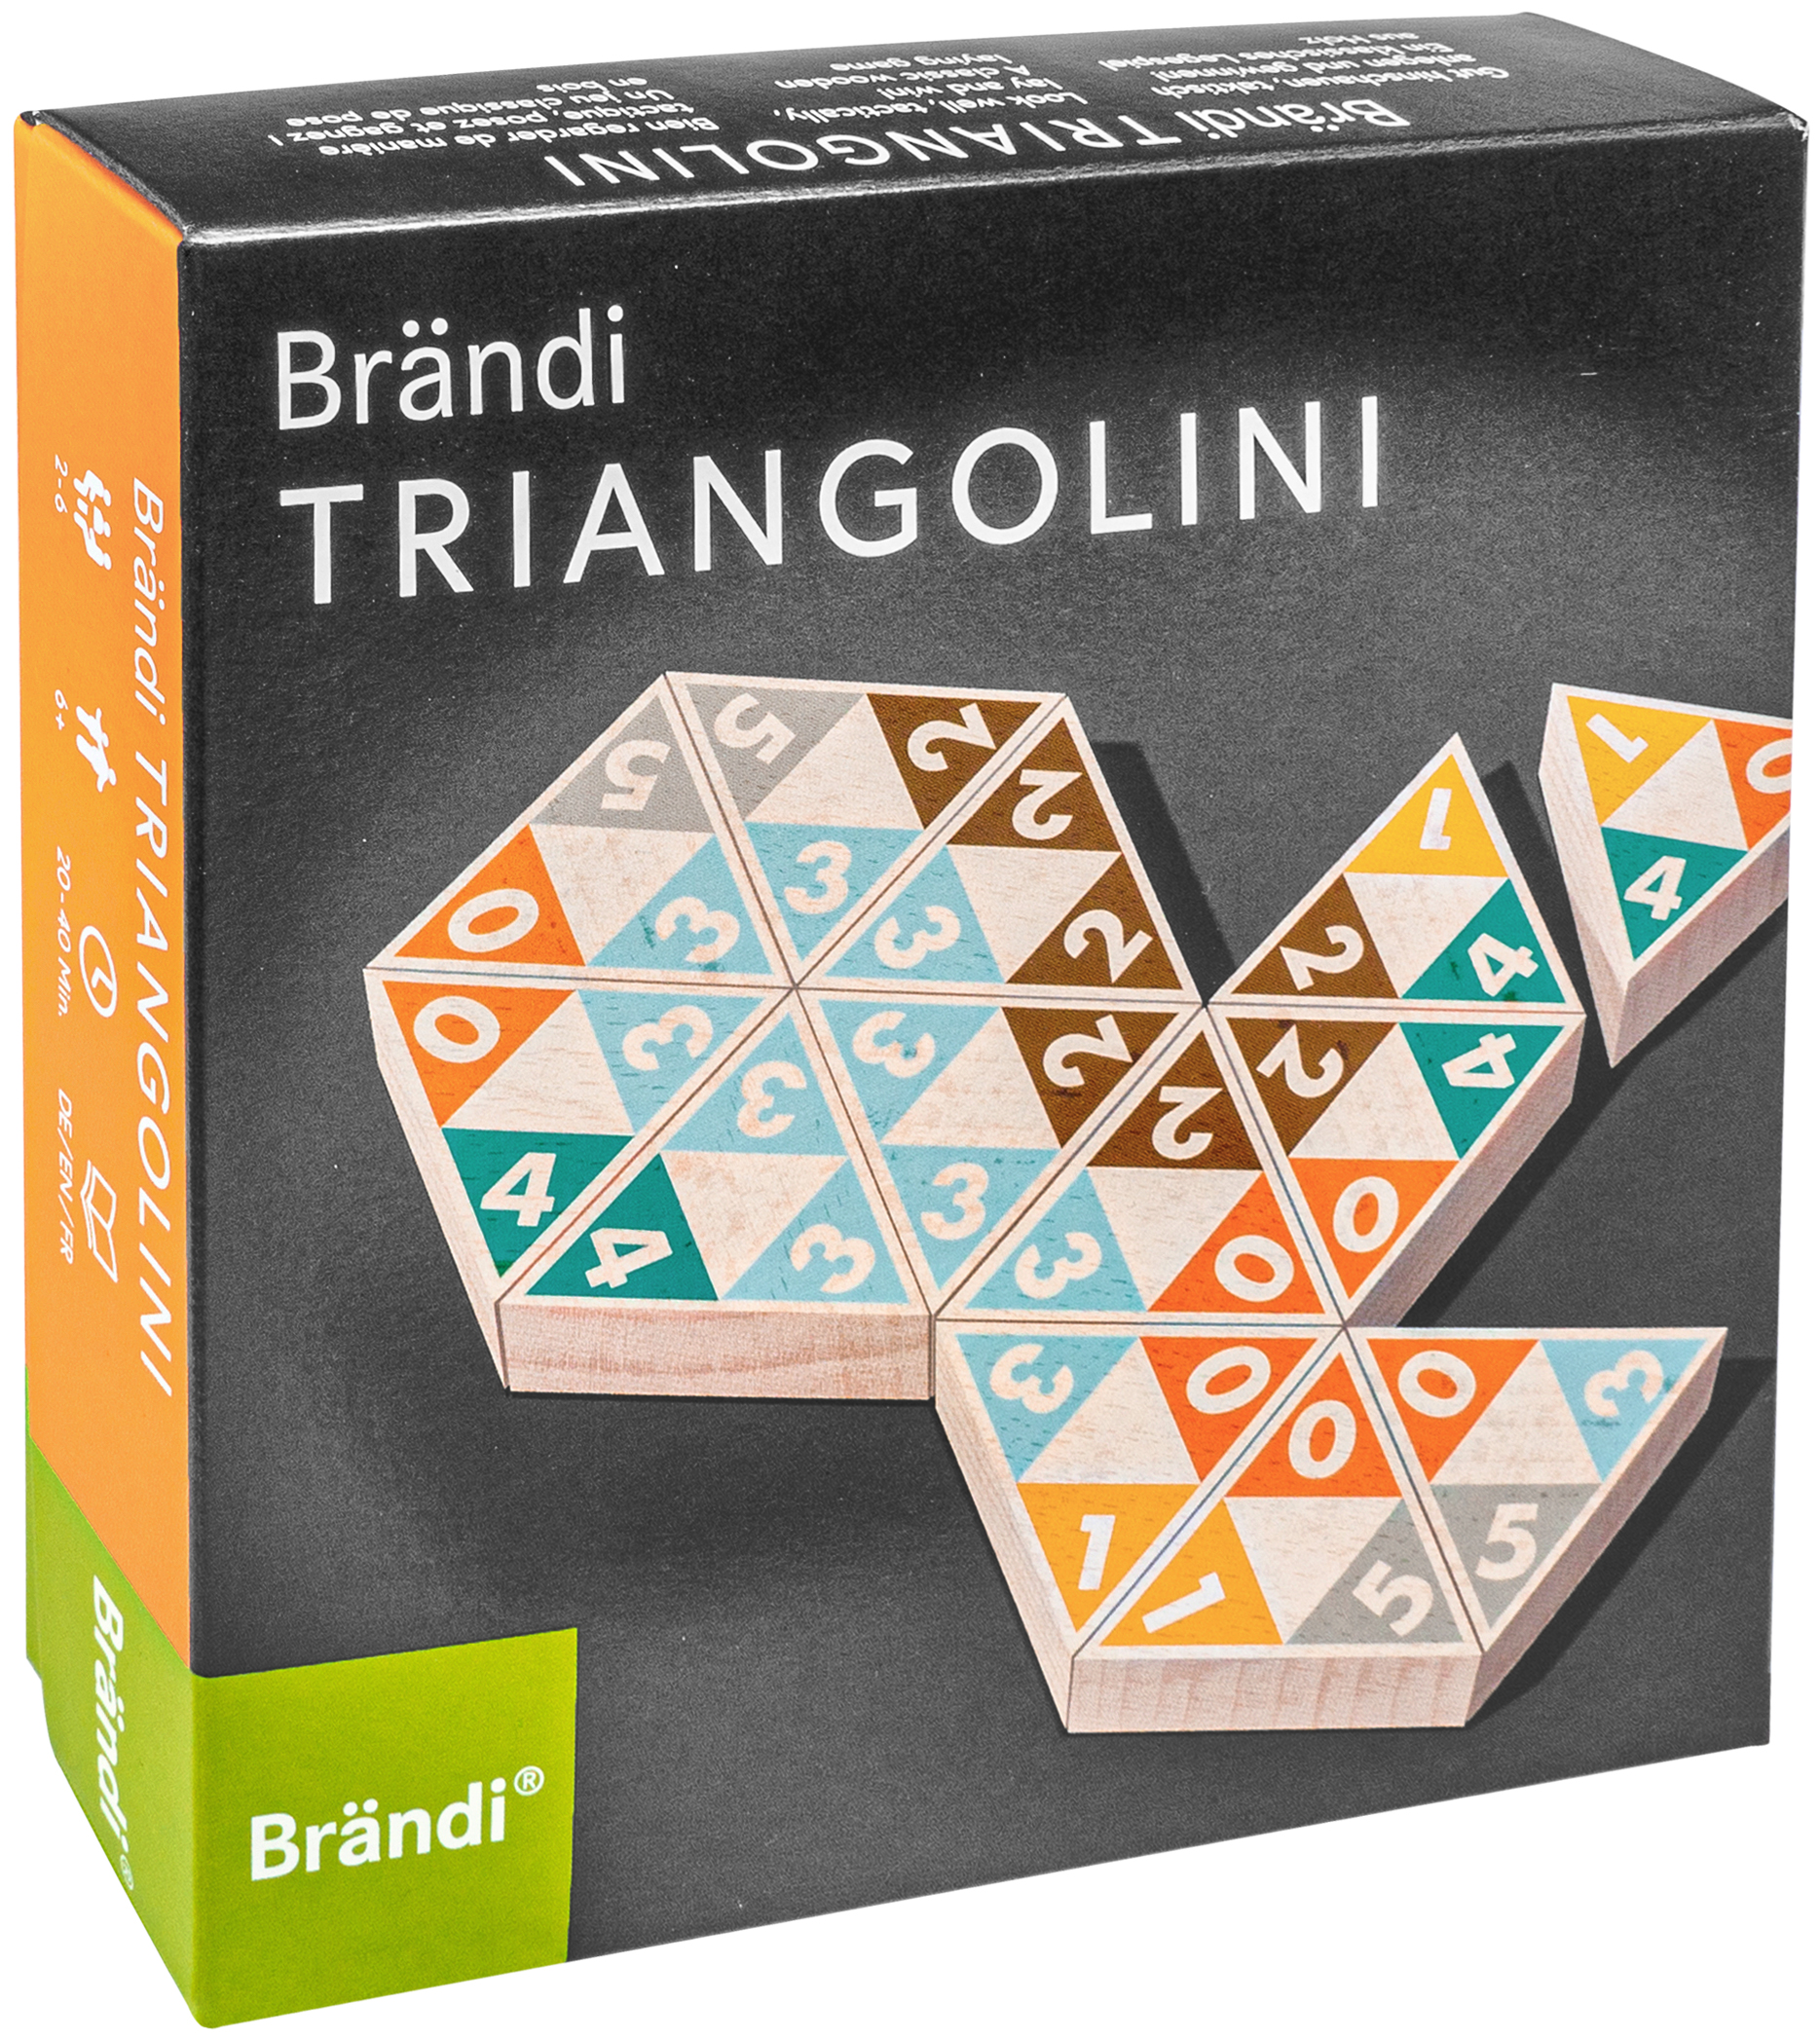 Brändi Triangolini